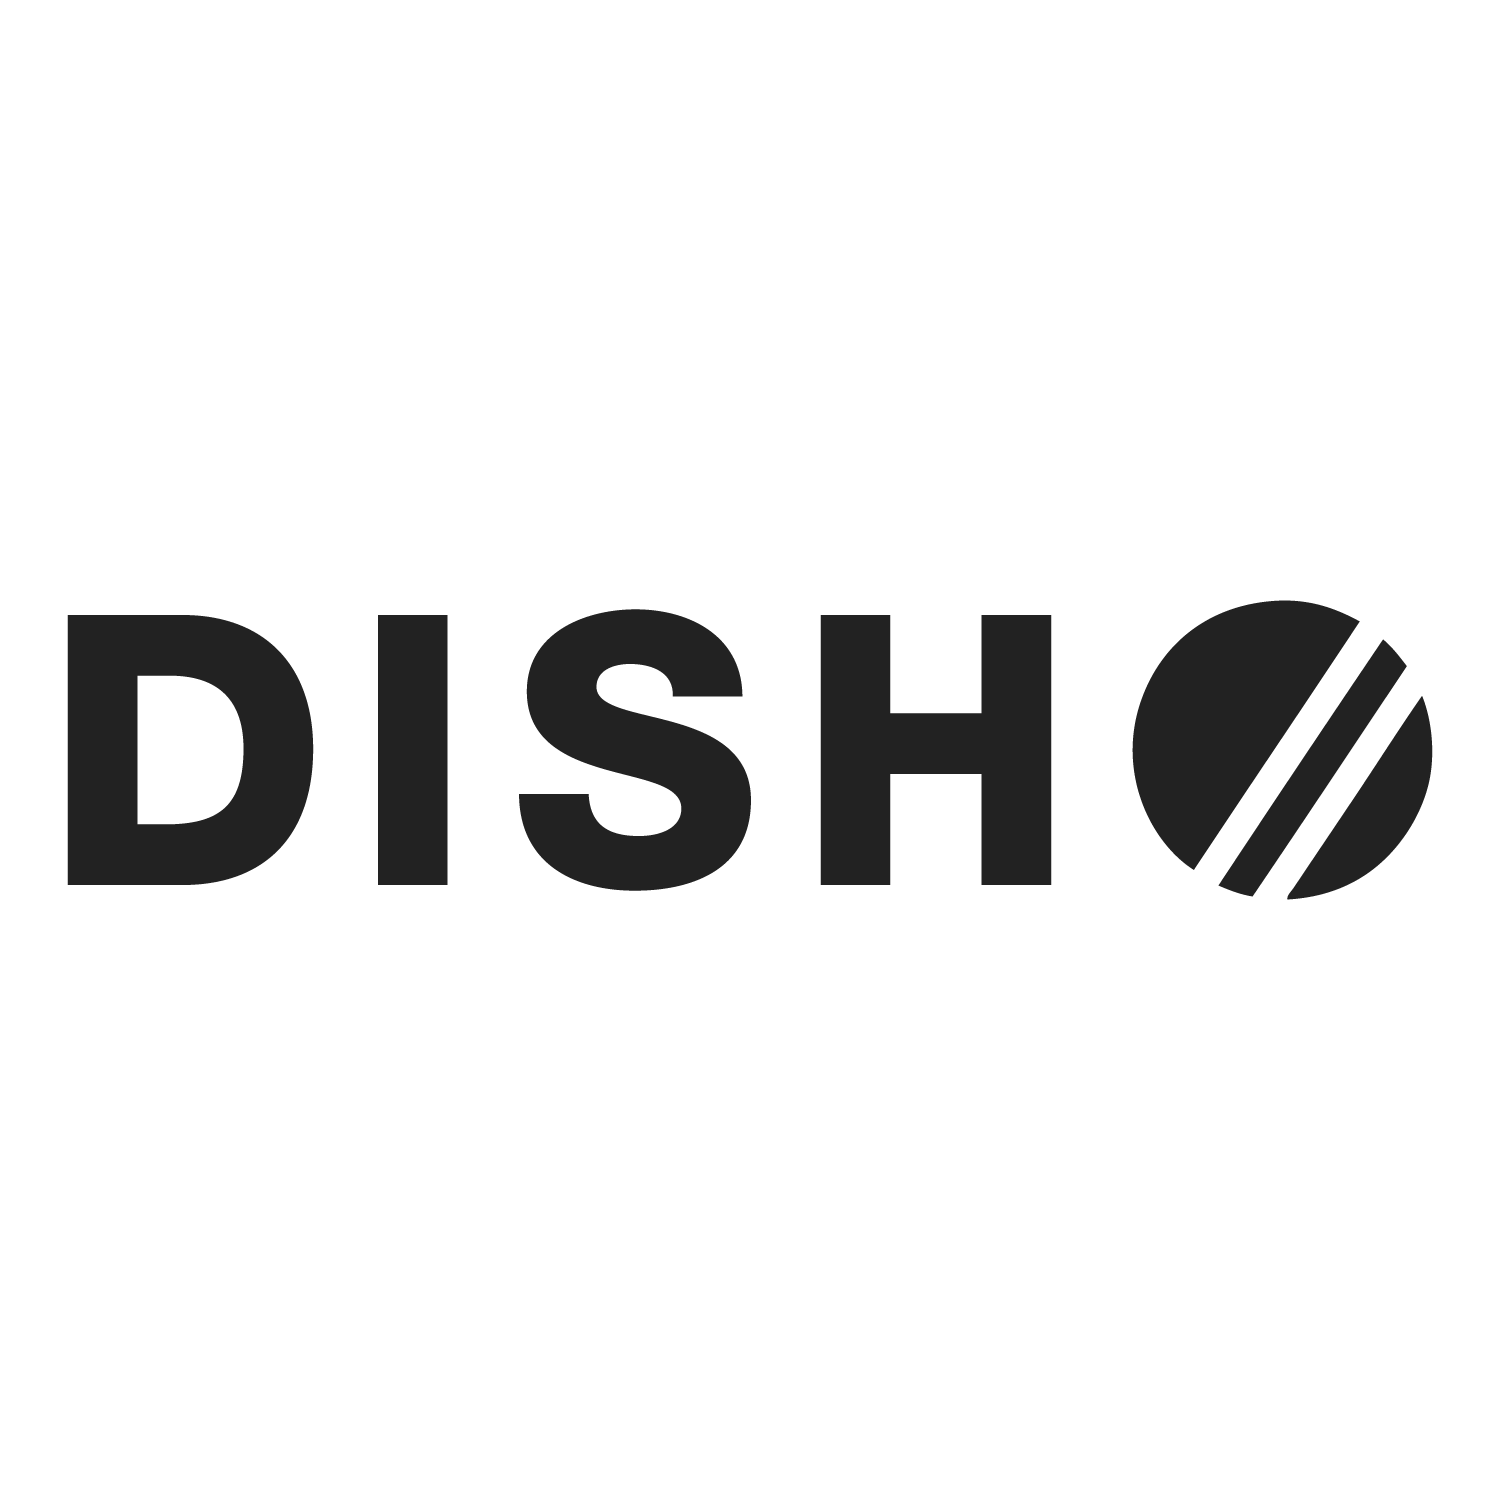 DISH//